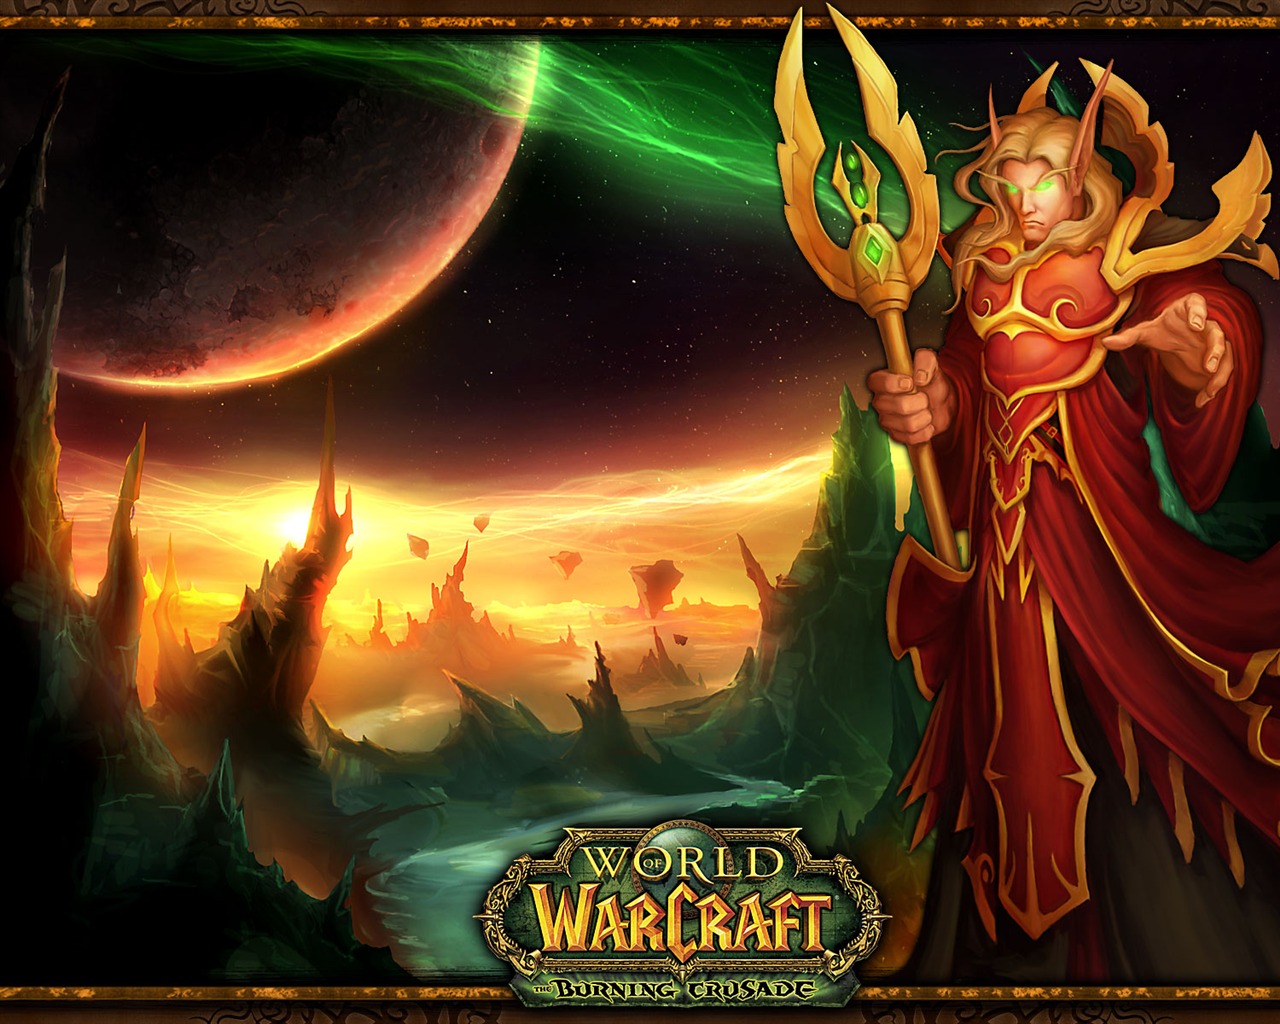 World of Warcraft 魔獸世界高清壁紙(二) #12 - 1280x1024